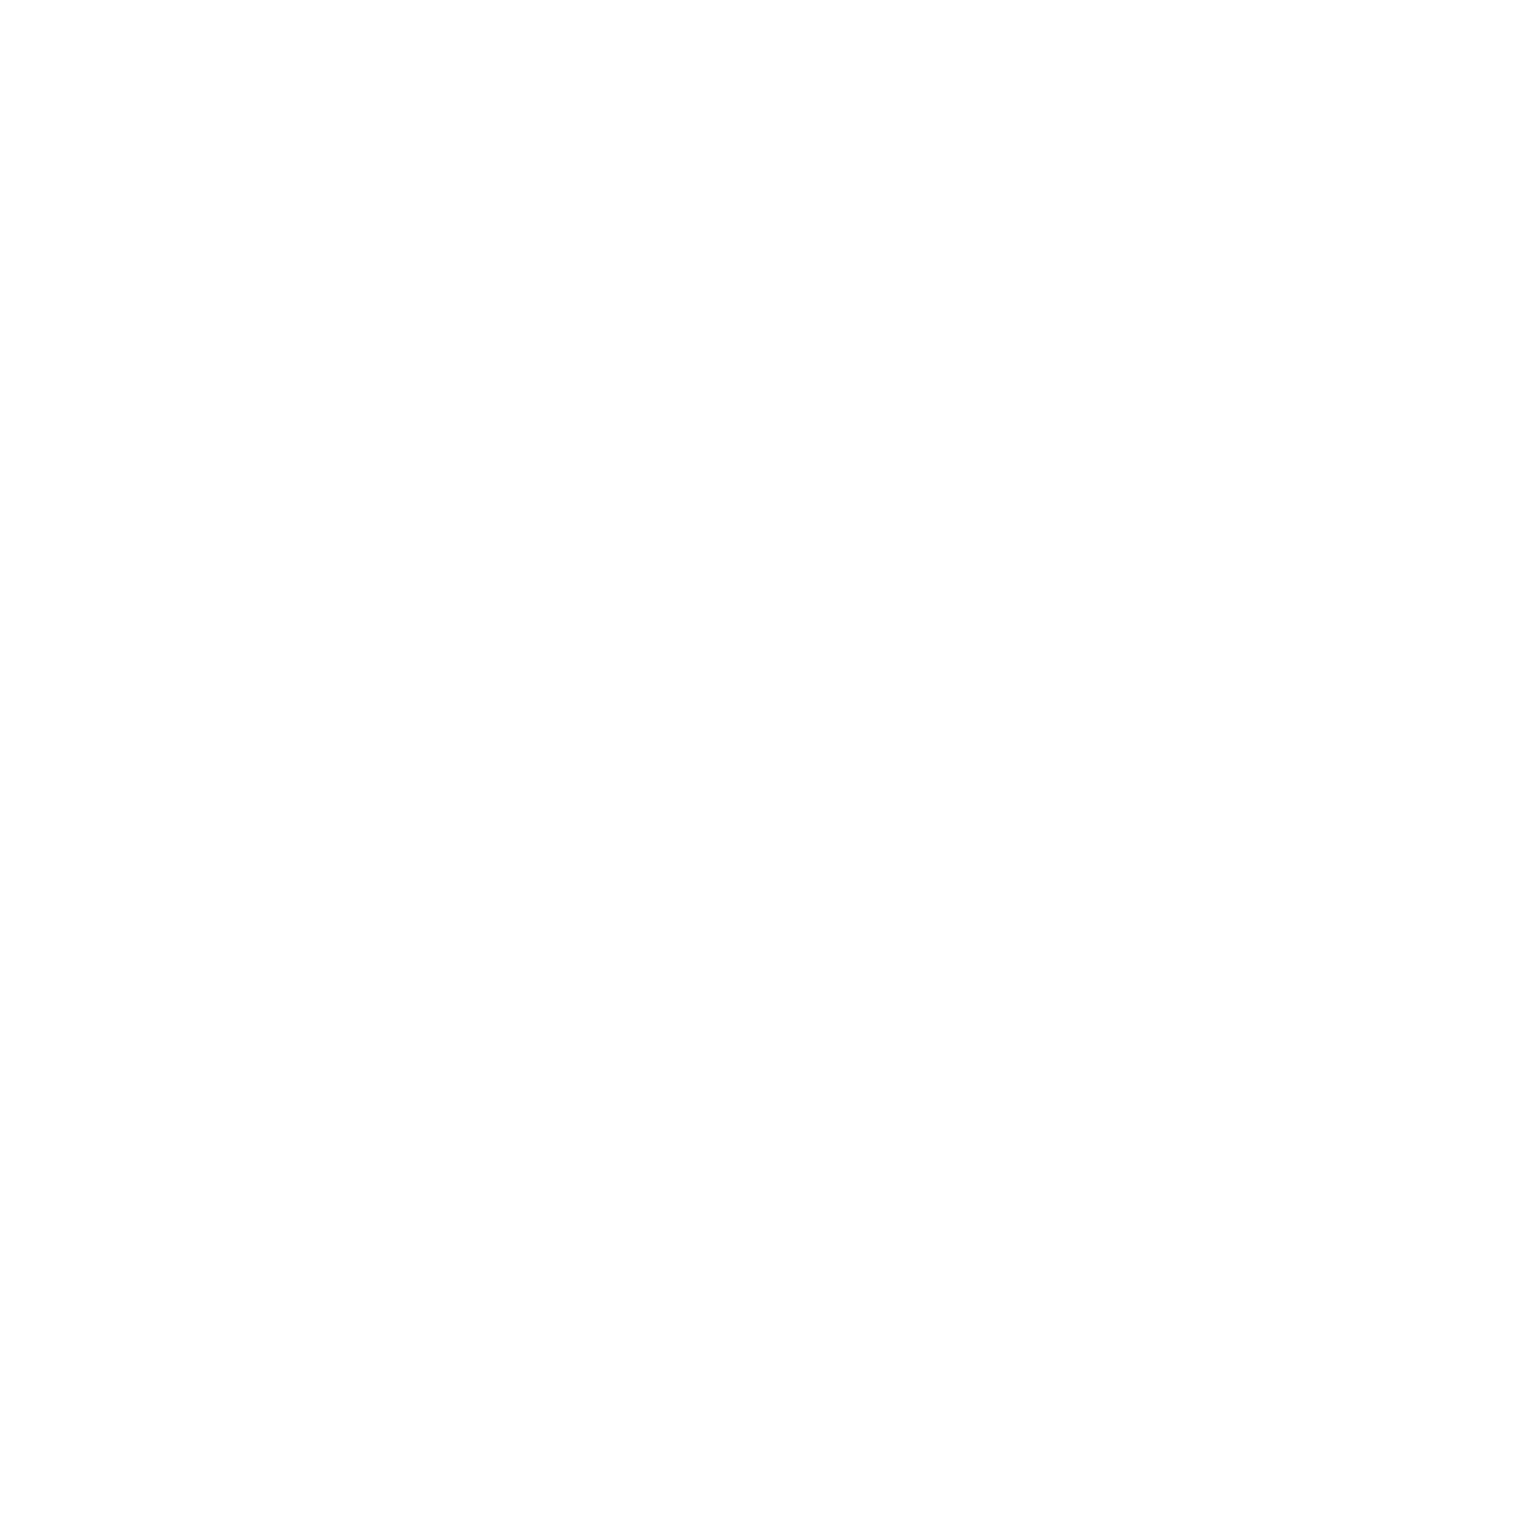 Matson logo pour fonds sombres (PNG transparent)